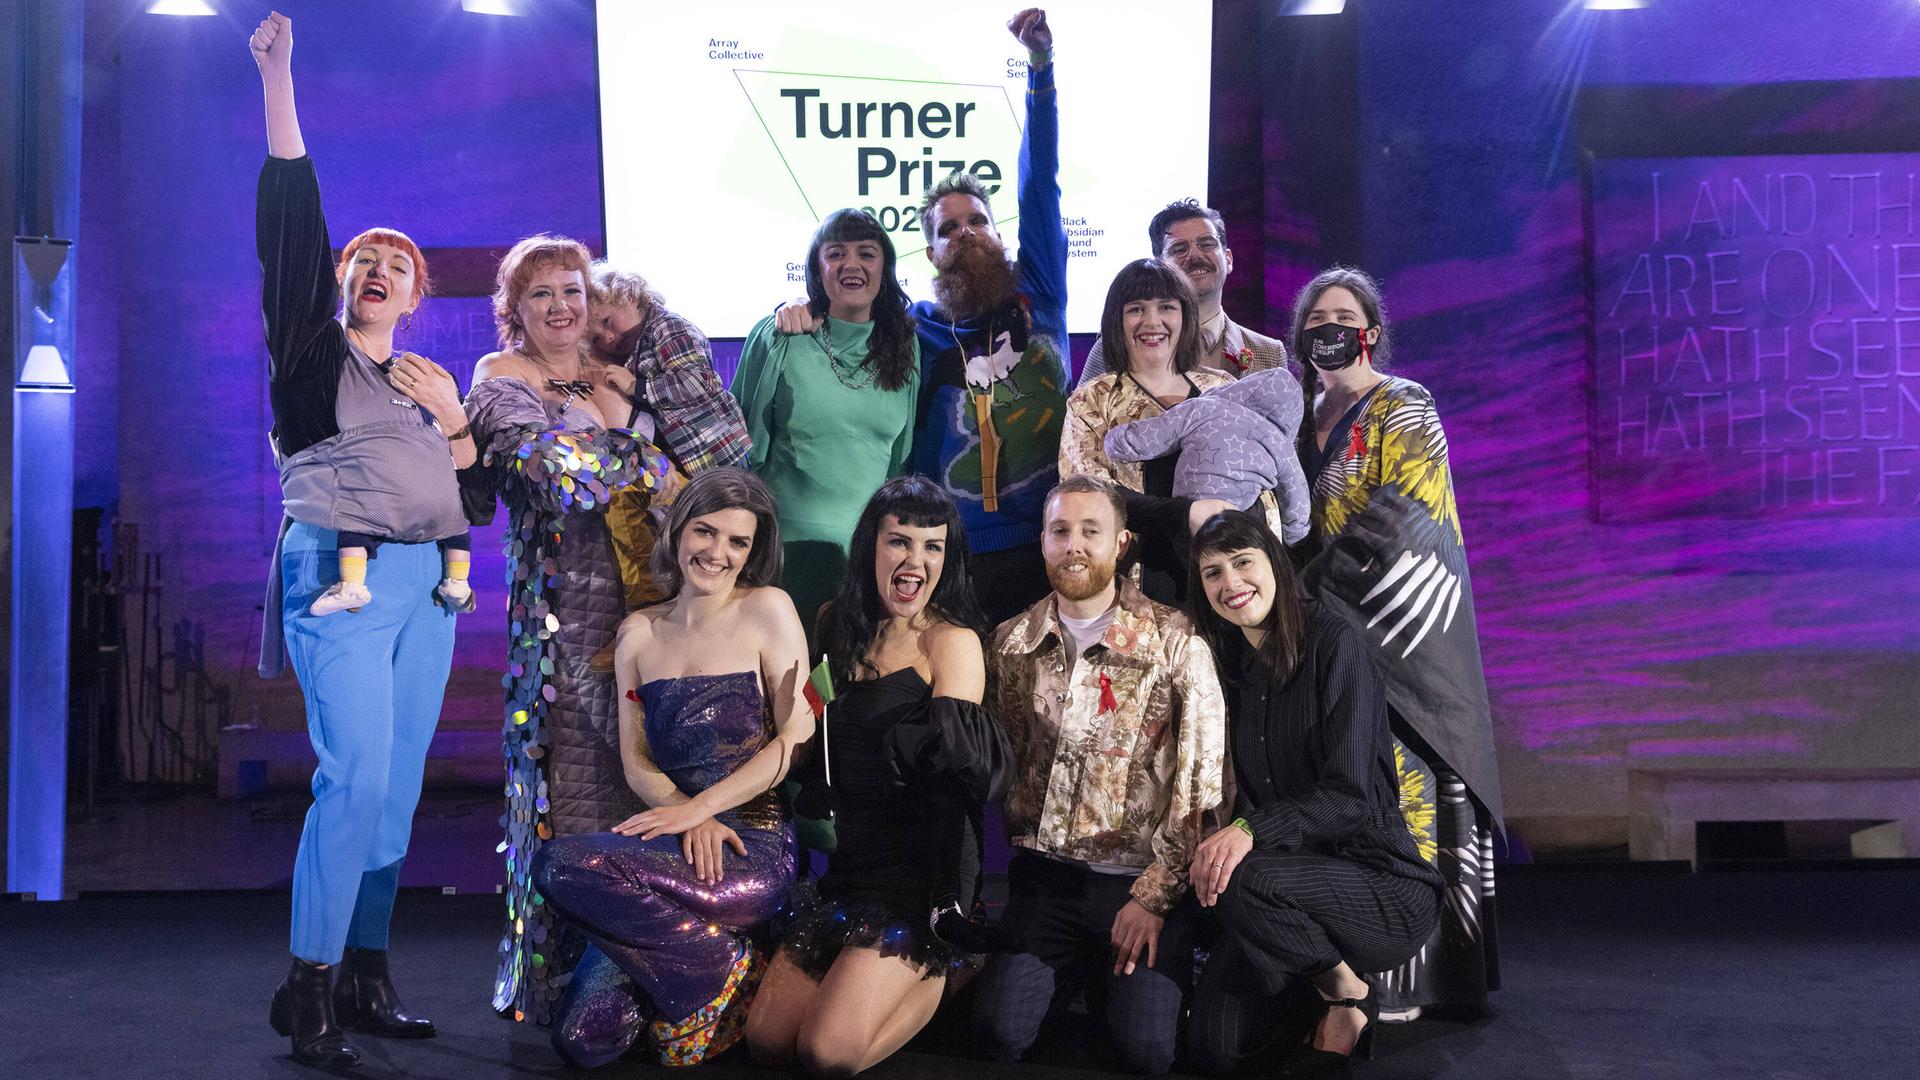 11 Menschen stehen auf einer Bühne vor einem Schild "Turner-Preis", einige recken die Faust in die Höhe, einige tragen Kinder auf dem Arm. Alle freuen sich. Es ist die Kunstgruppe Array Collective.